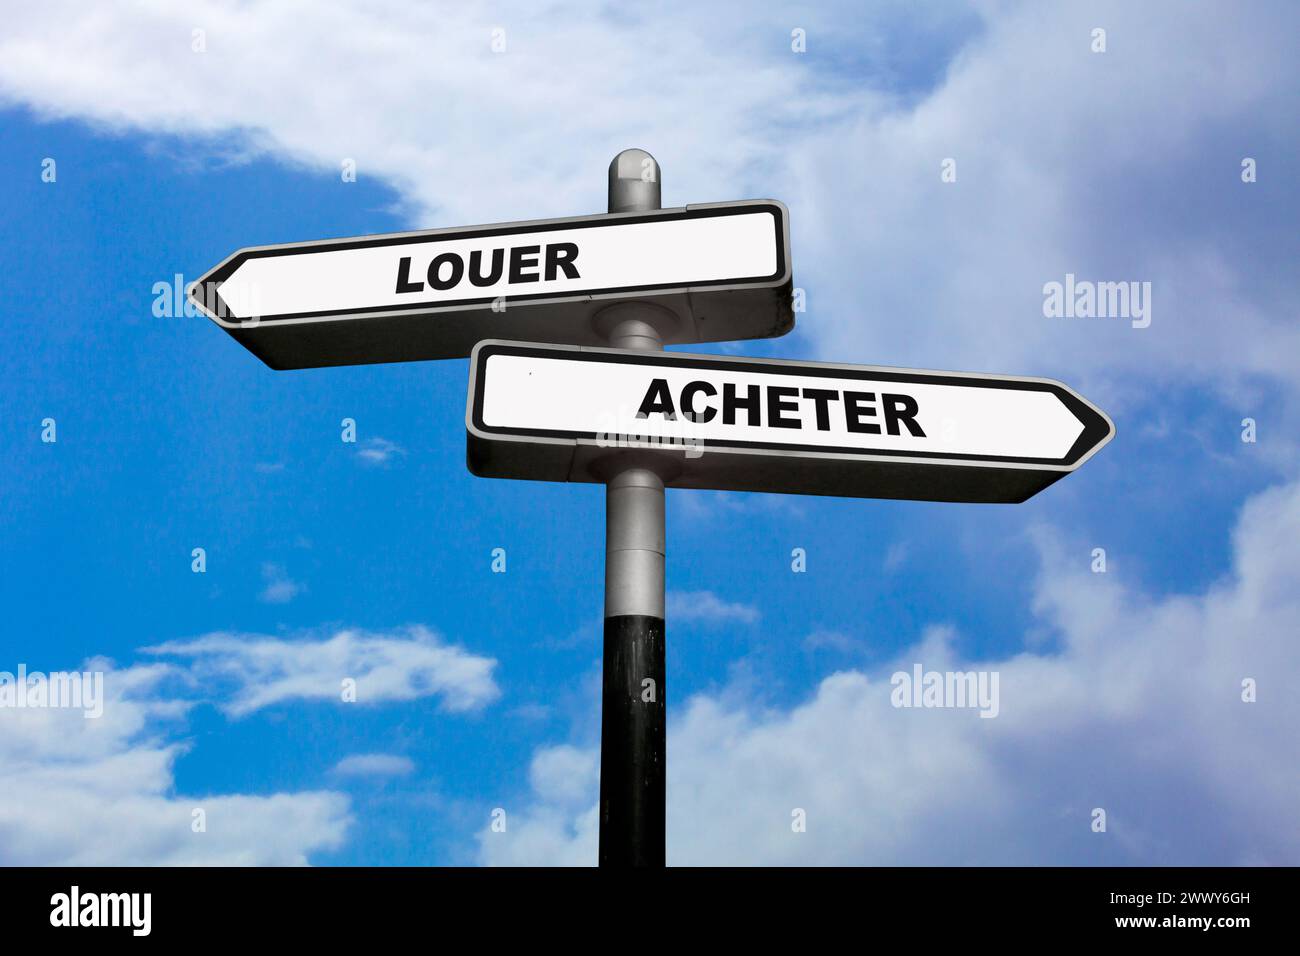 Zwei Richtungsschilder, eines nach links und das andere nach rechts, mit französischer Schrift: Louer / acheter, was auf Englisch bedeutet: Miete / Stockfoto